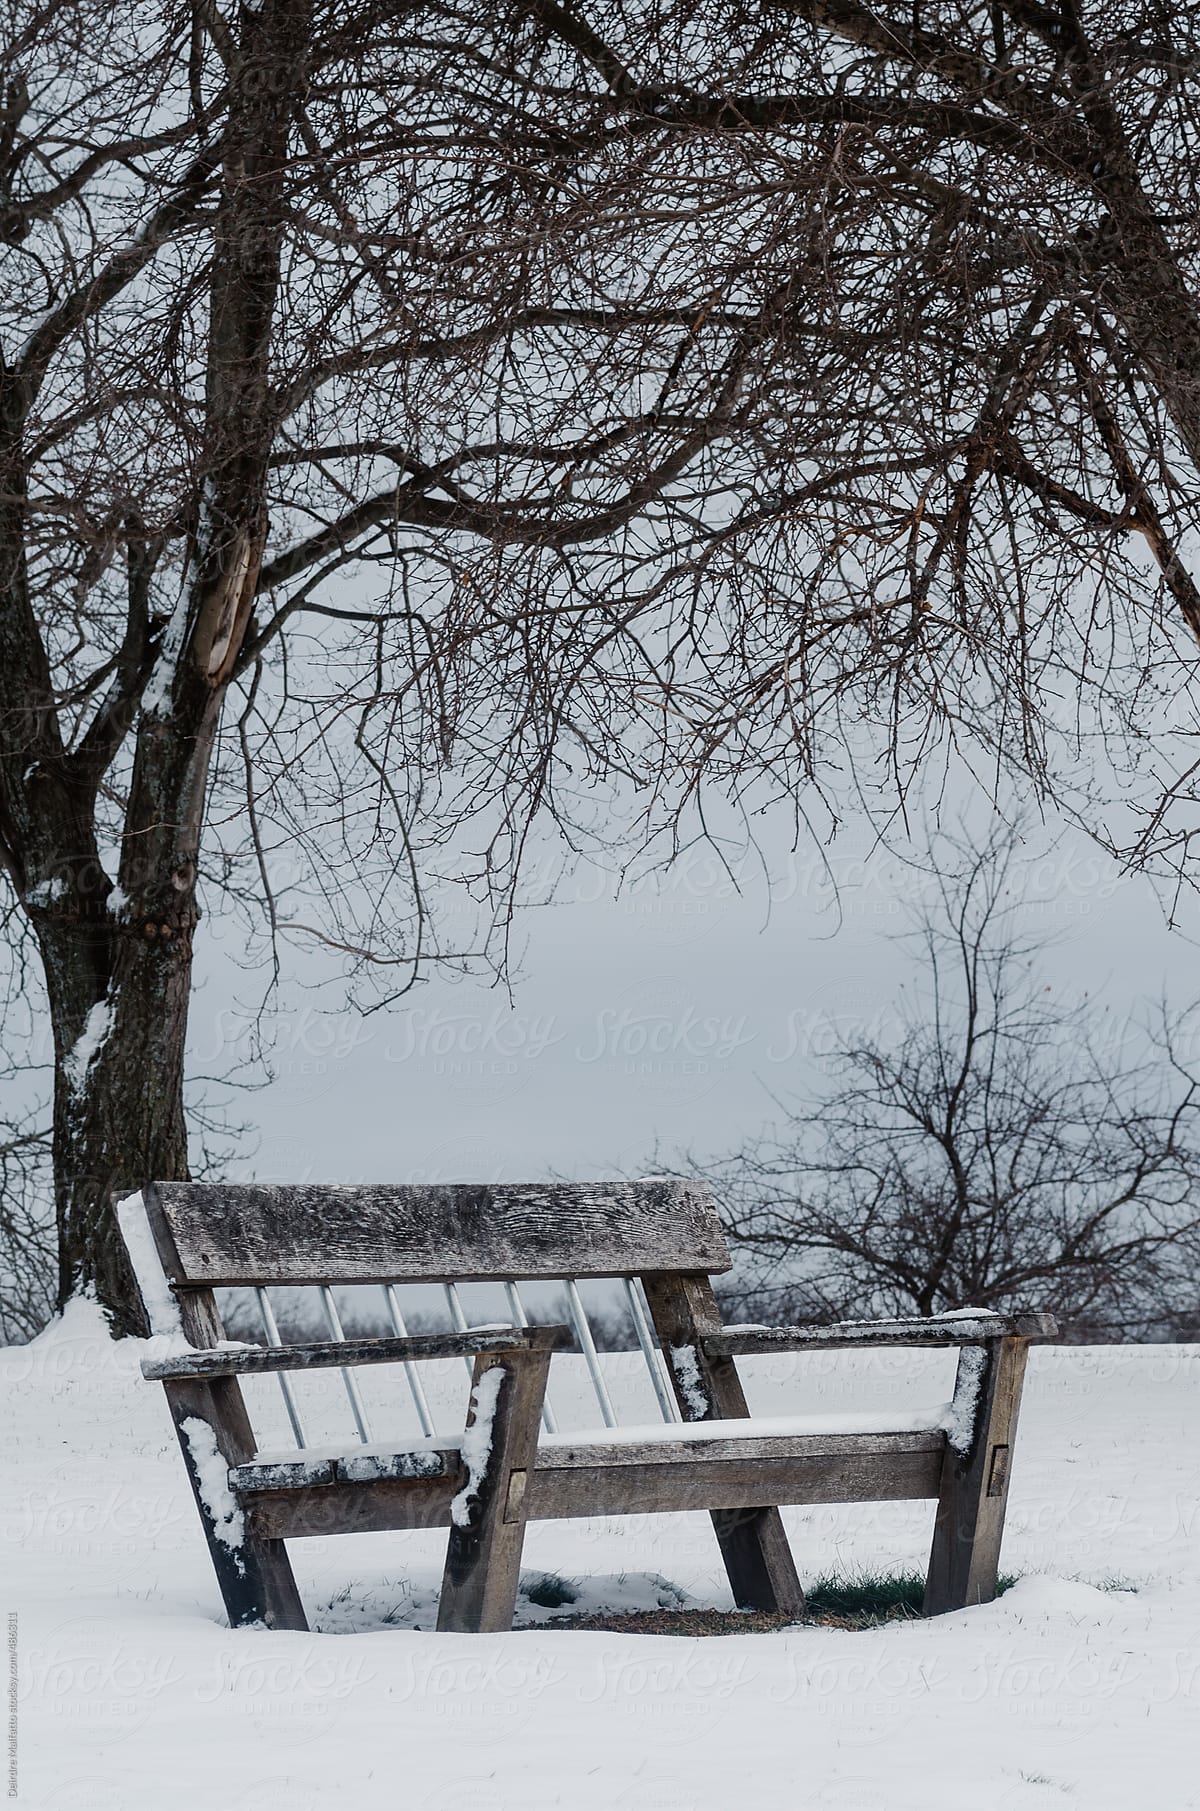 empty bench in snowy landscape